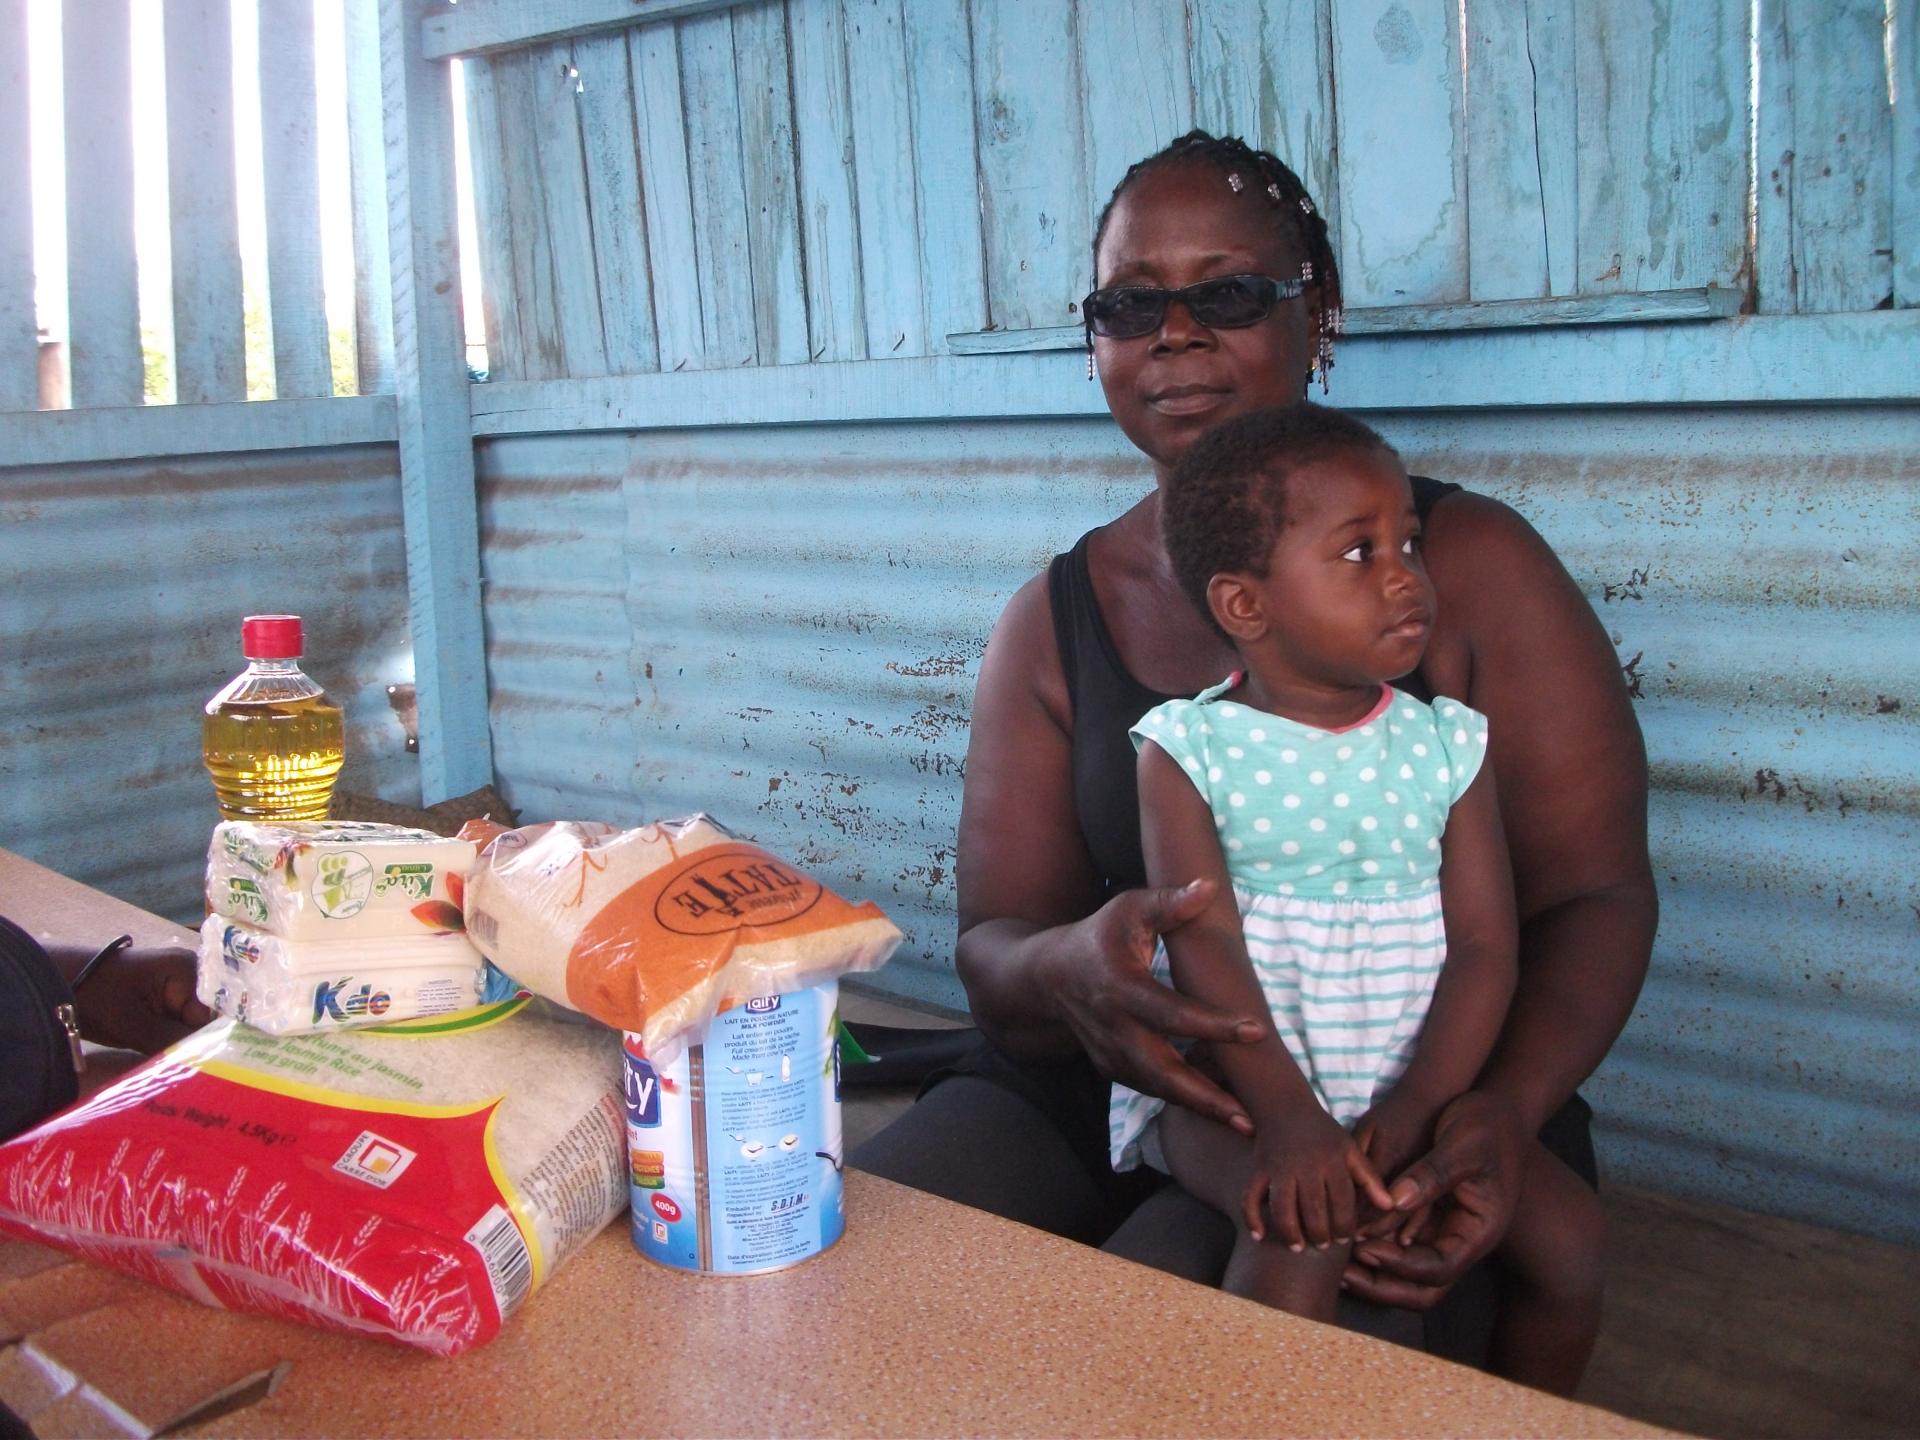 Dons de kits alimentaires aux enfants vulnérables et aux familles pendant la période de COVID-19